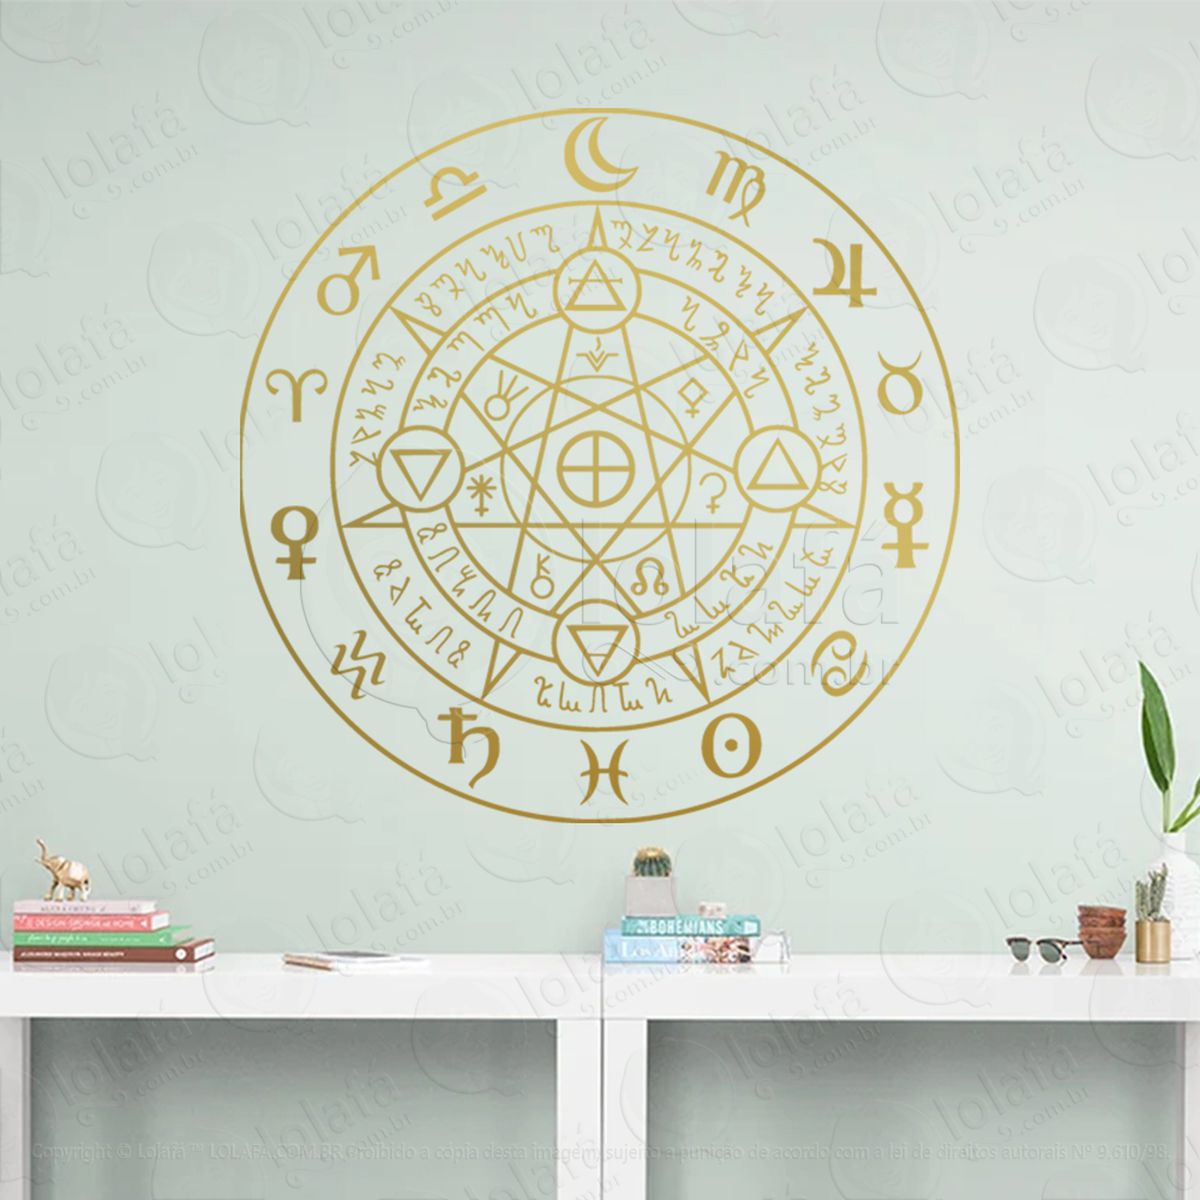 roda rúnica rune wheel adesivo de parede decorativo para casa, sala, quarto, vidro e altar ocultista - mod:103